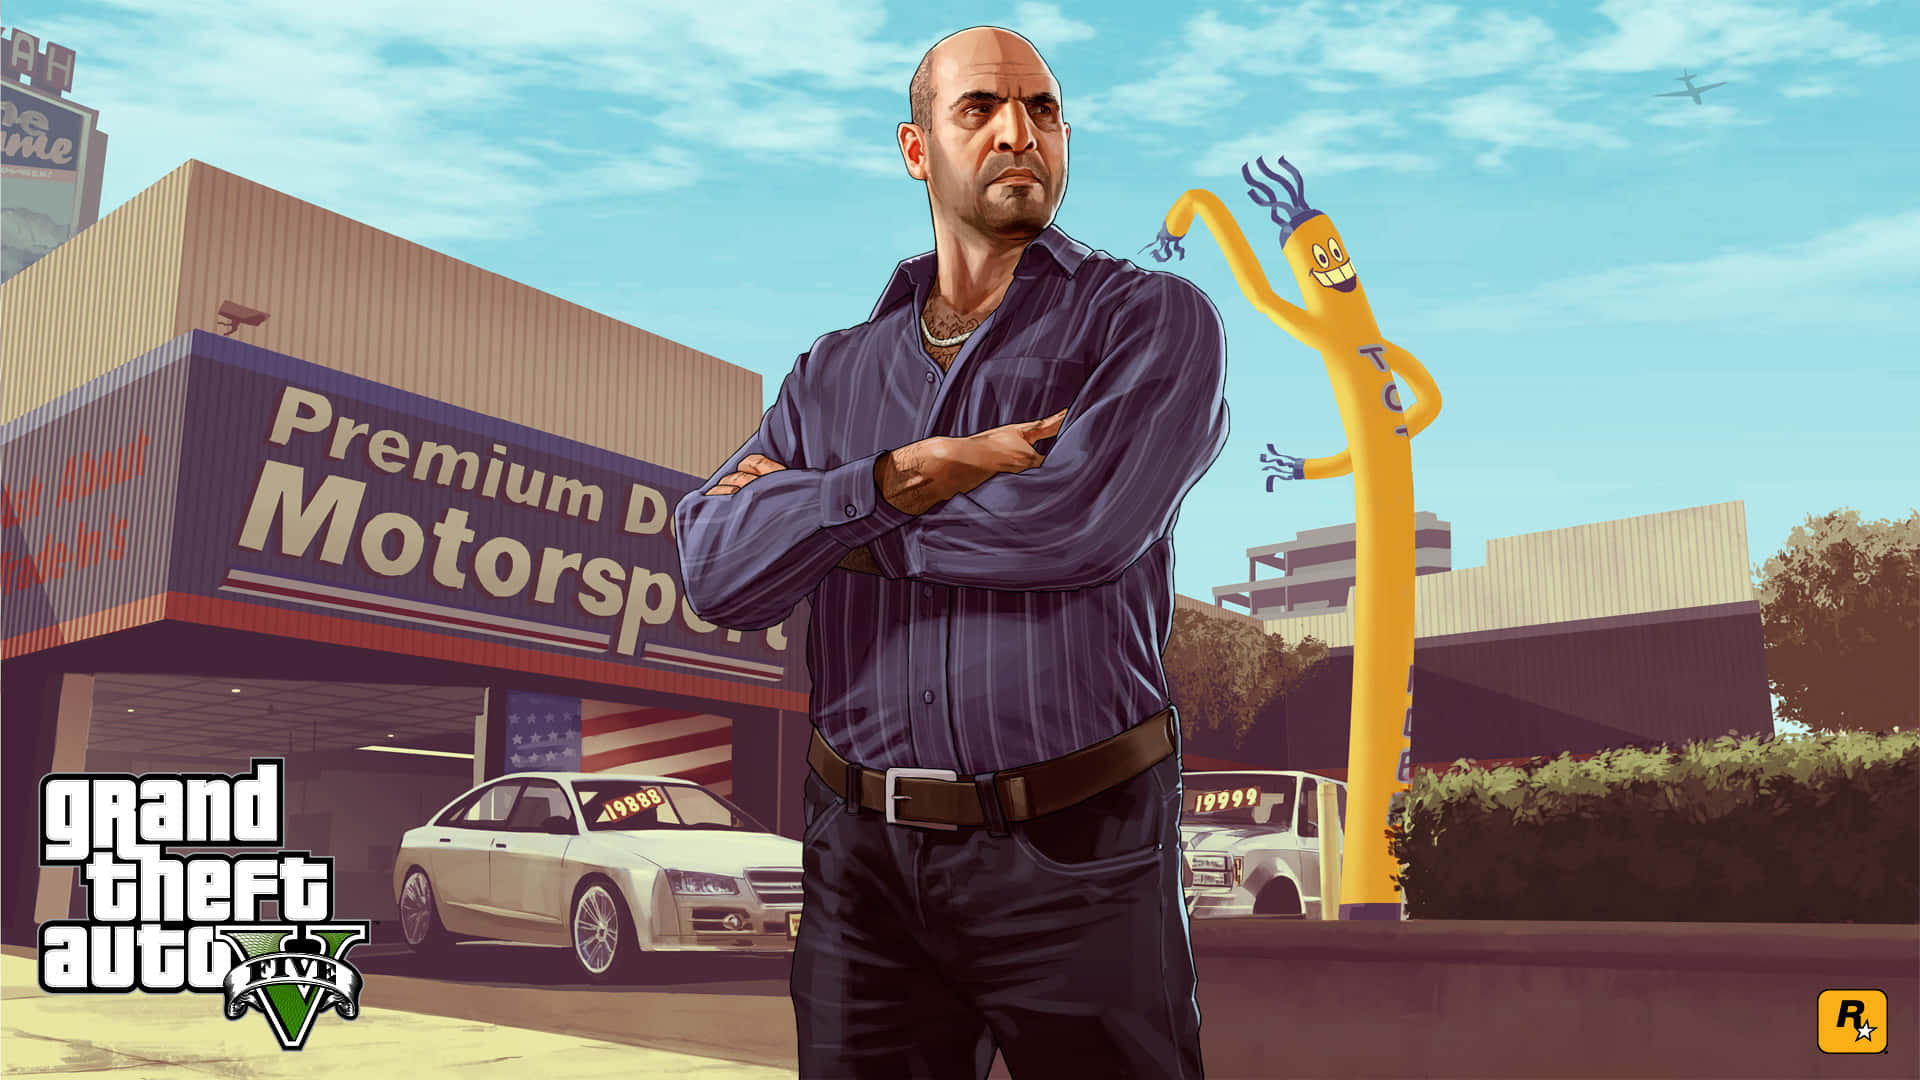 Explore the Grand Theft Auto 5 Universe